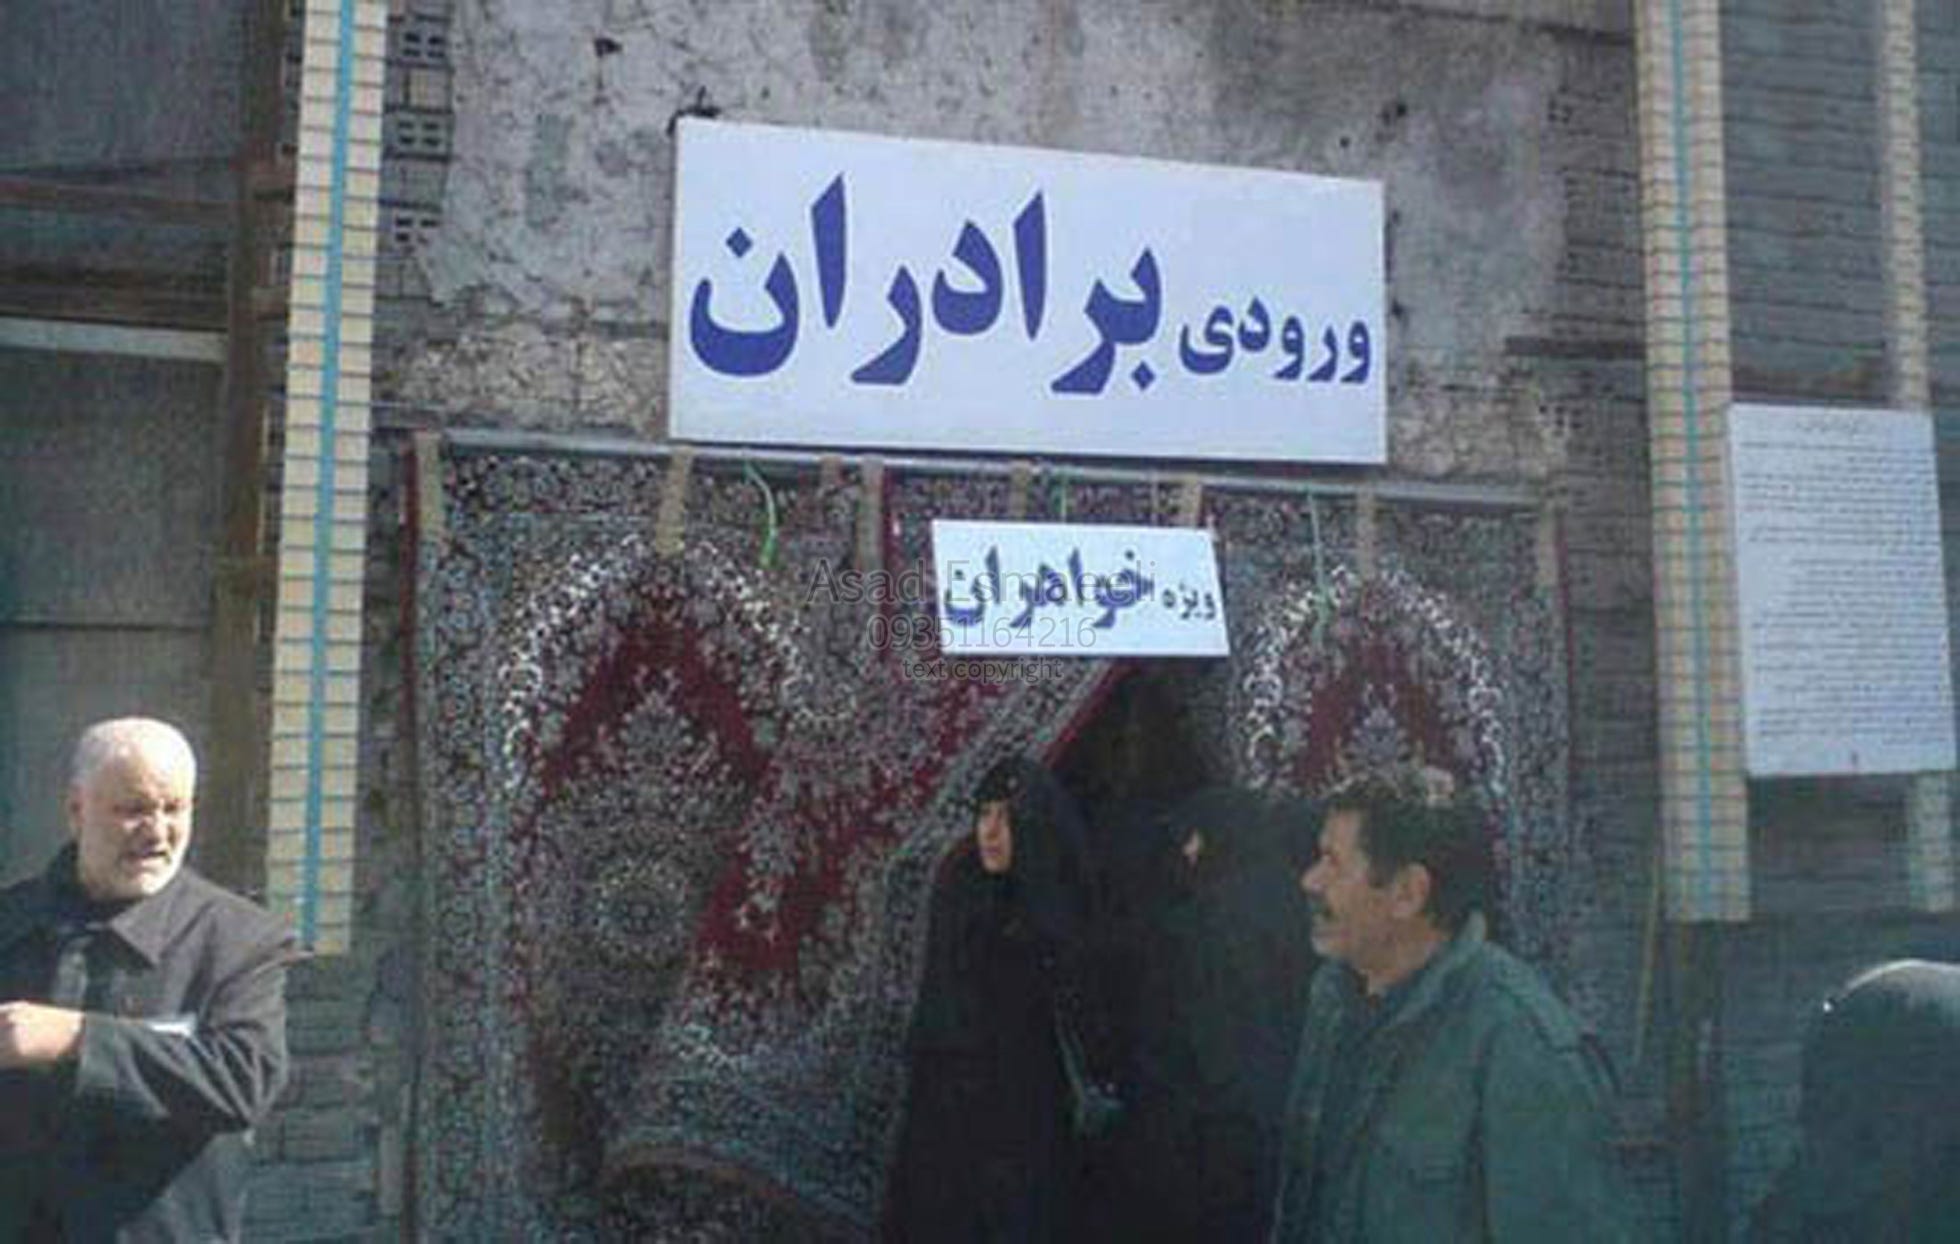 عکس های خنده دار جدید 2018. خنده خنده دار شادی ایران جالب دیدنی عکس… | by  عکس های خنده دار جدید | Medium